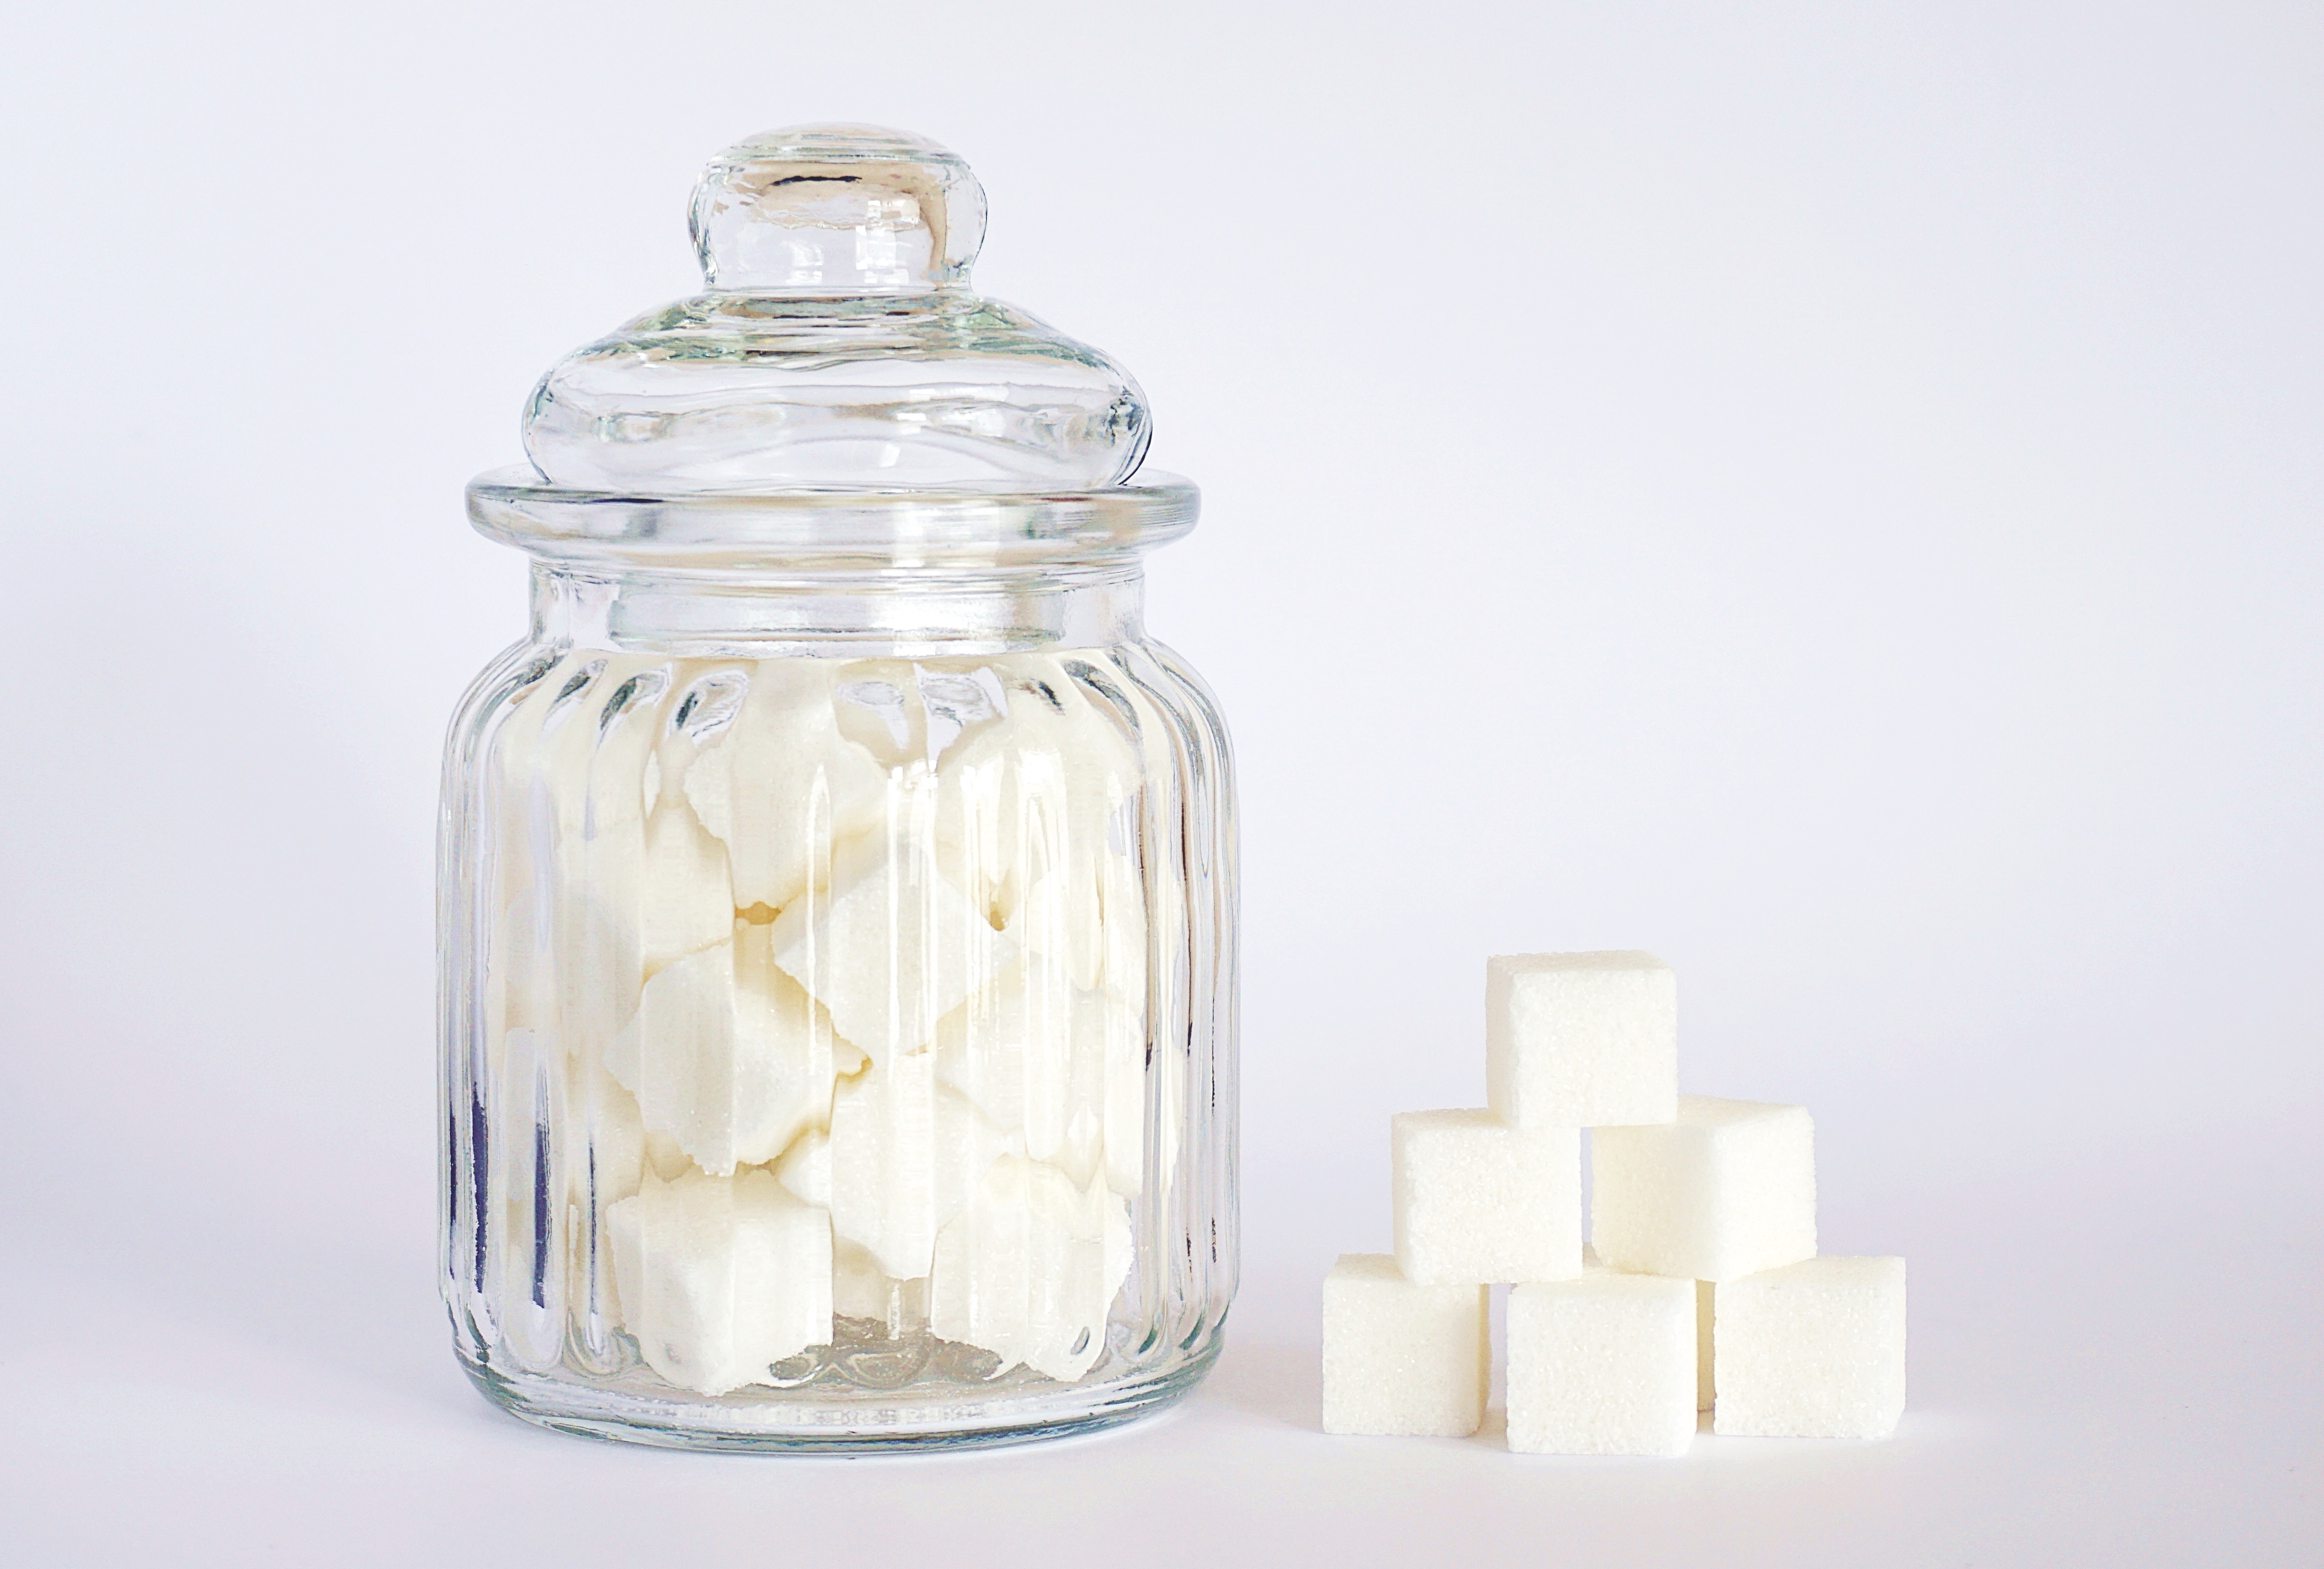 Sugar Substitutes Are Sweetening Food Companies’ Patent Portfolios